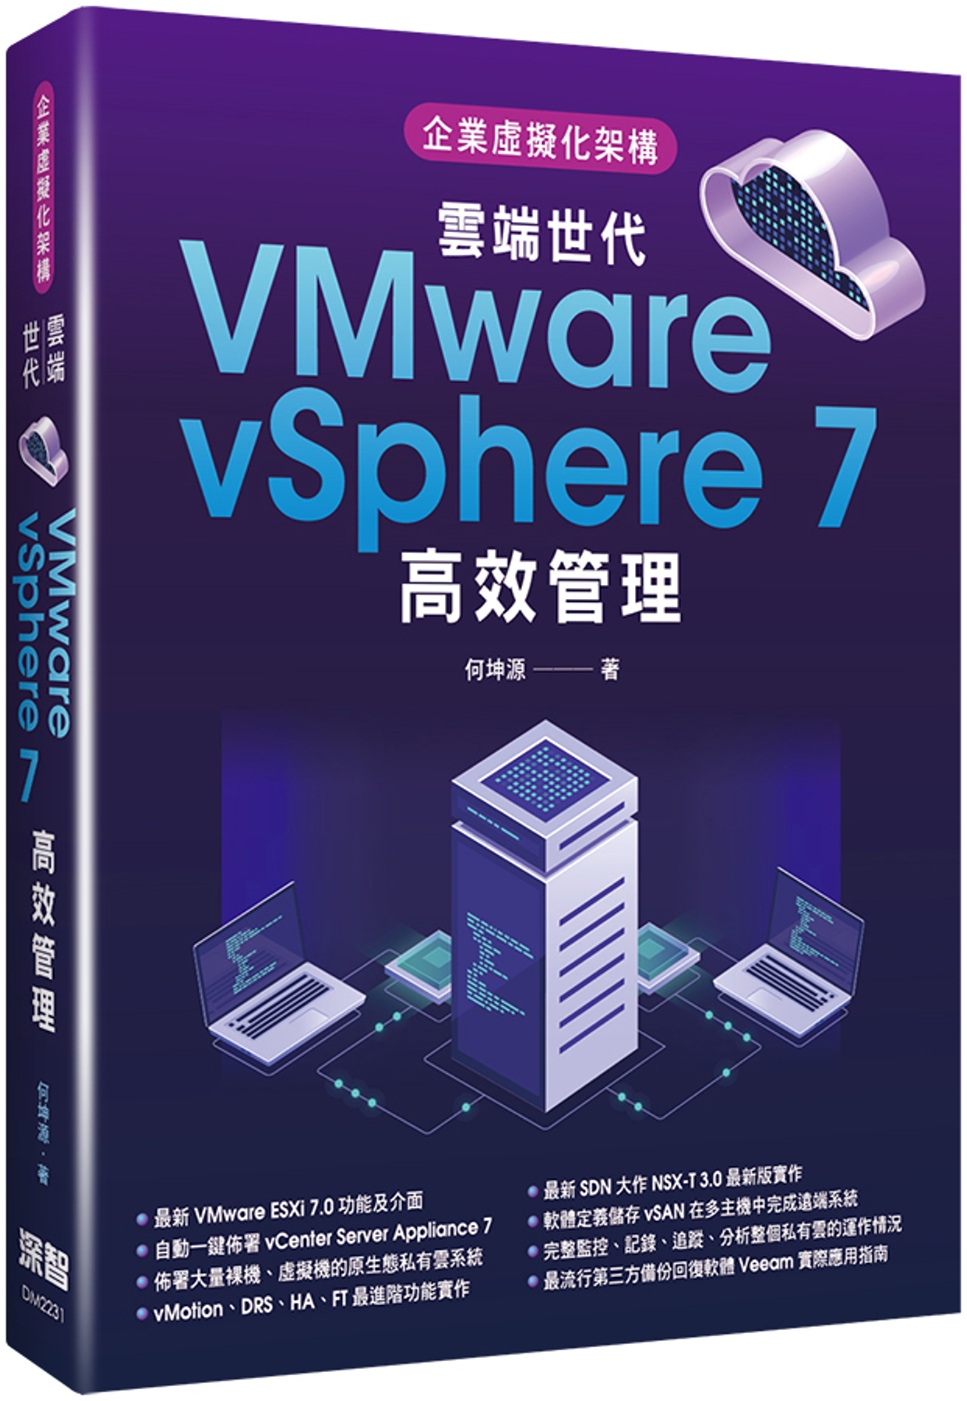 预售 何坤源 企业虚拟化架构：云端世代VMware vSphere 7高效管理 深智数位 书籍/杂志/报纸 科学技术类原版书 原图主图